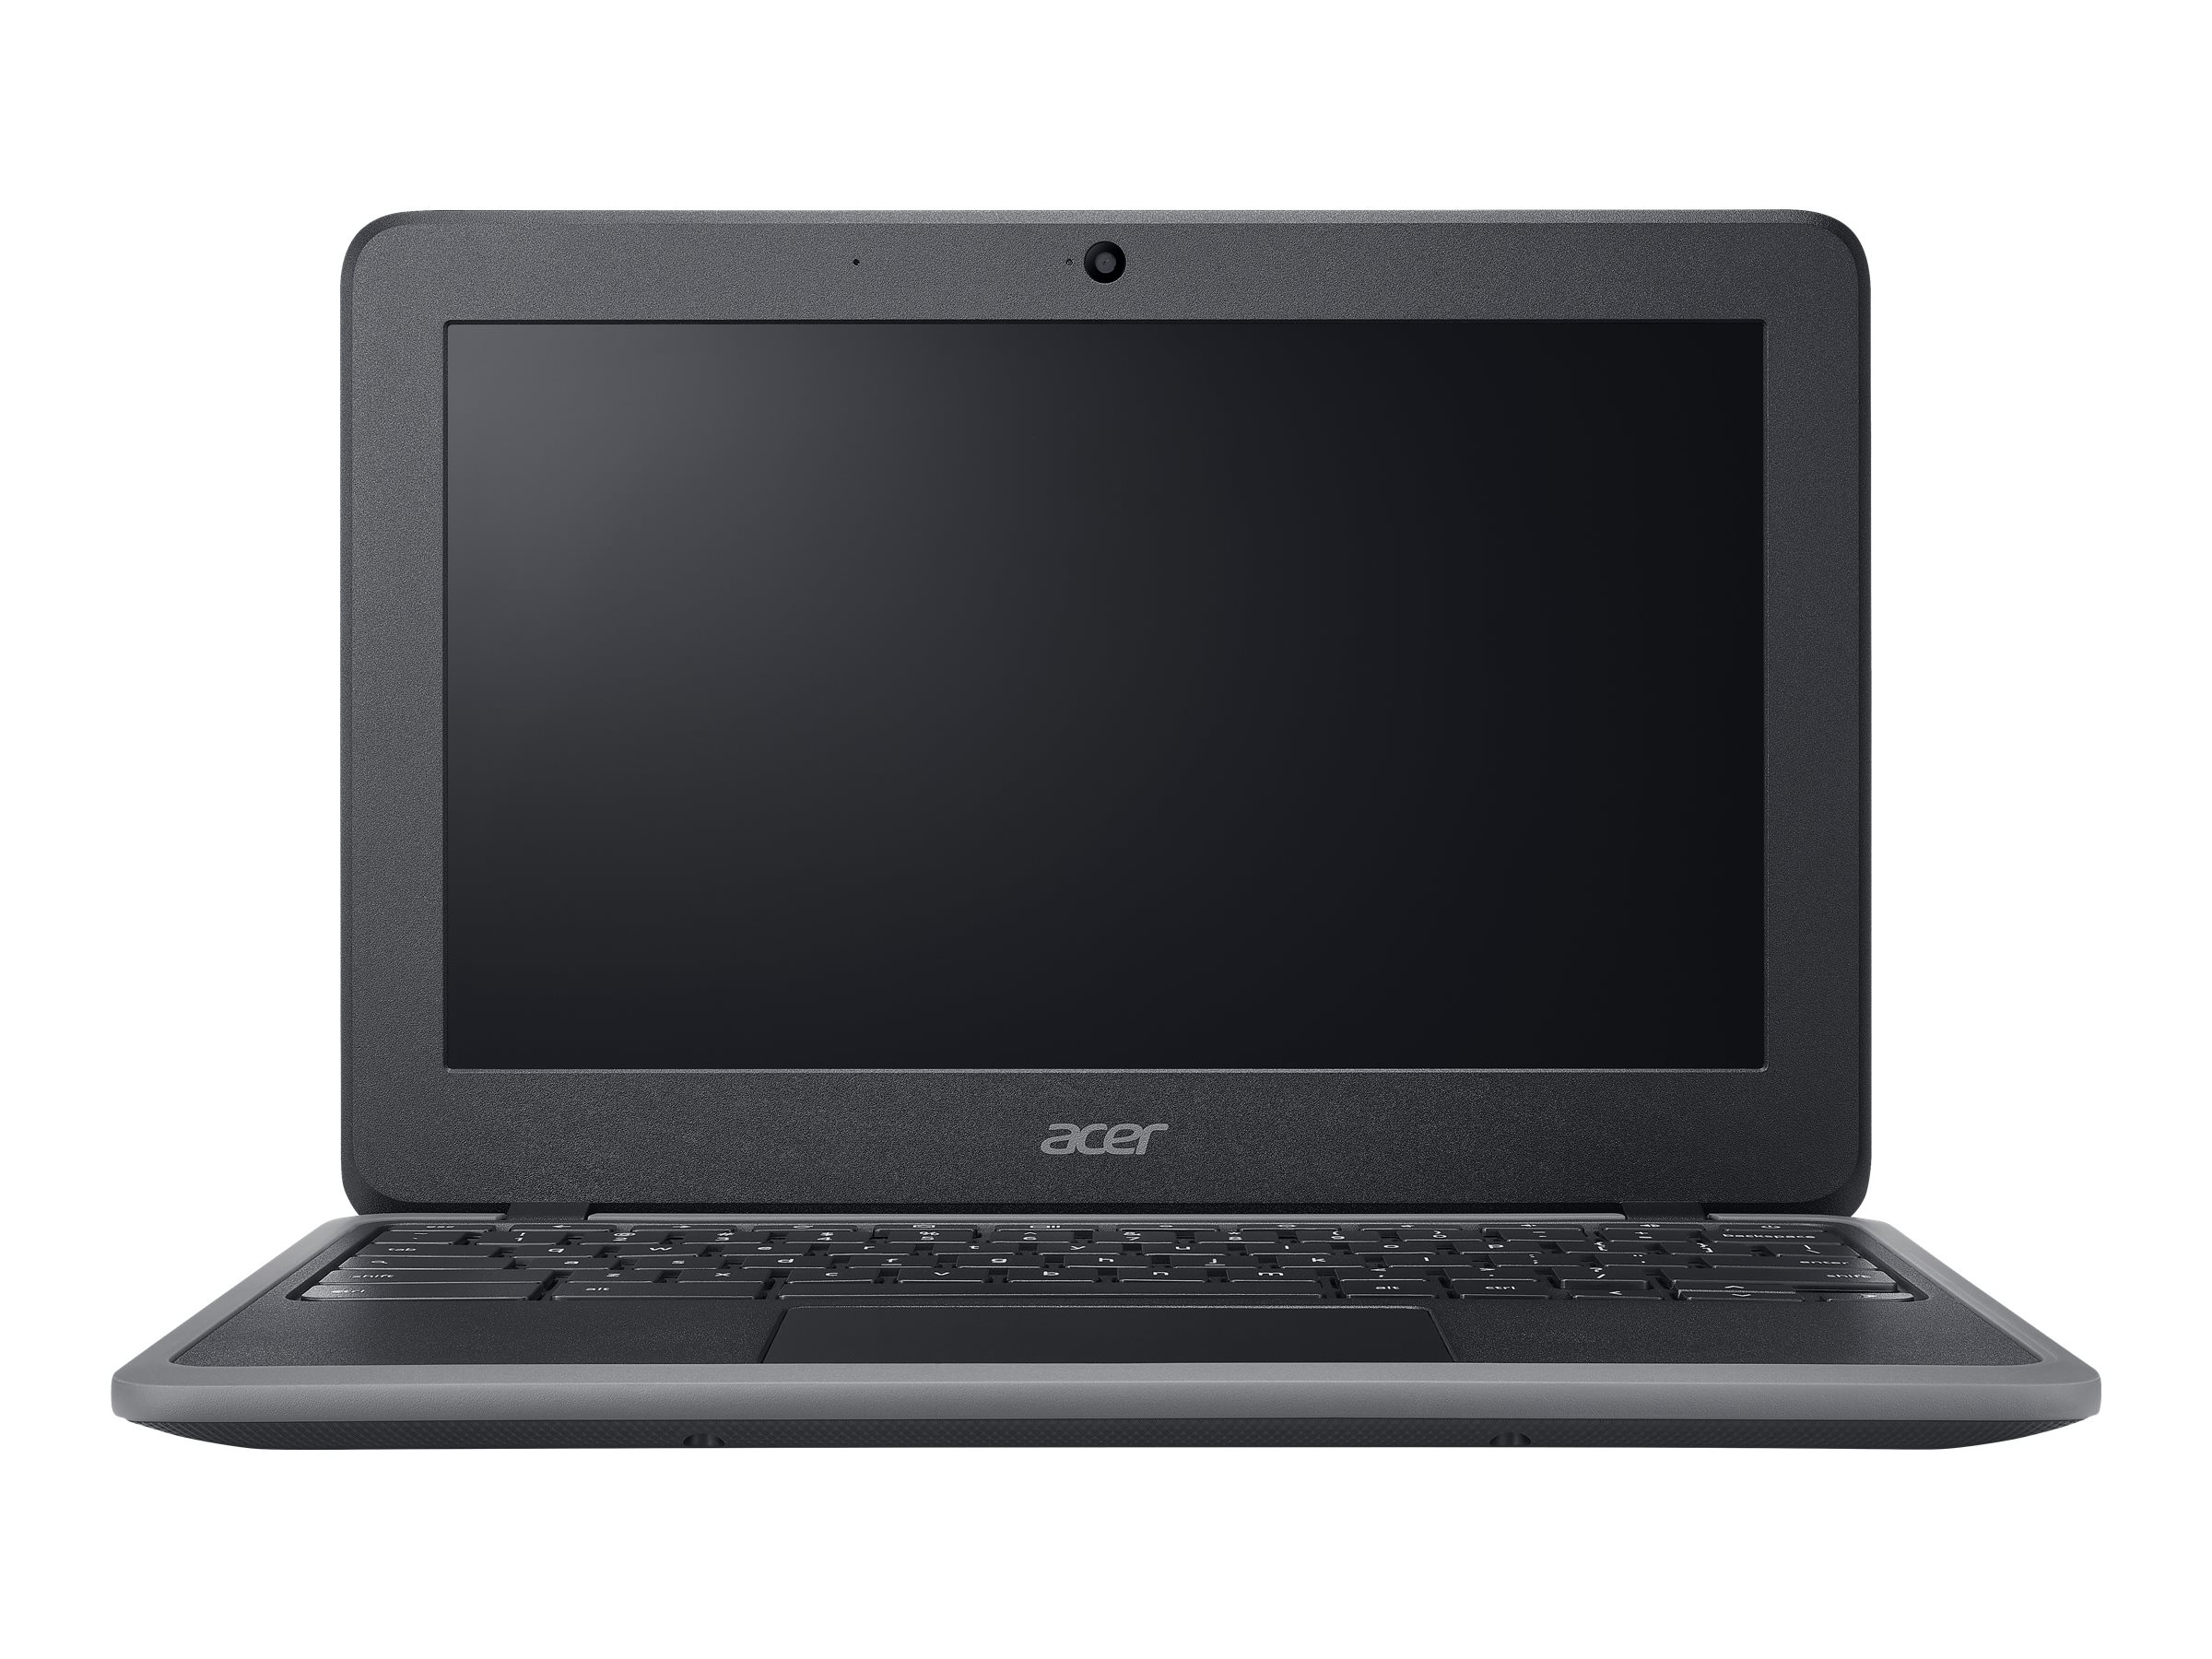 Acer Chromebook 11 (C732LT)